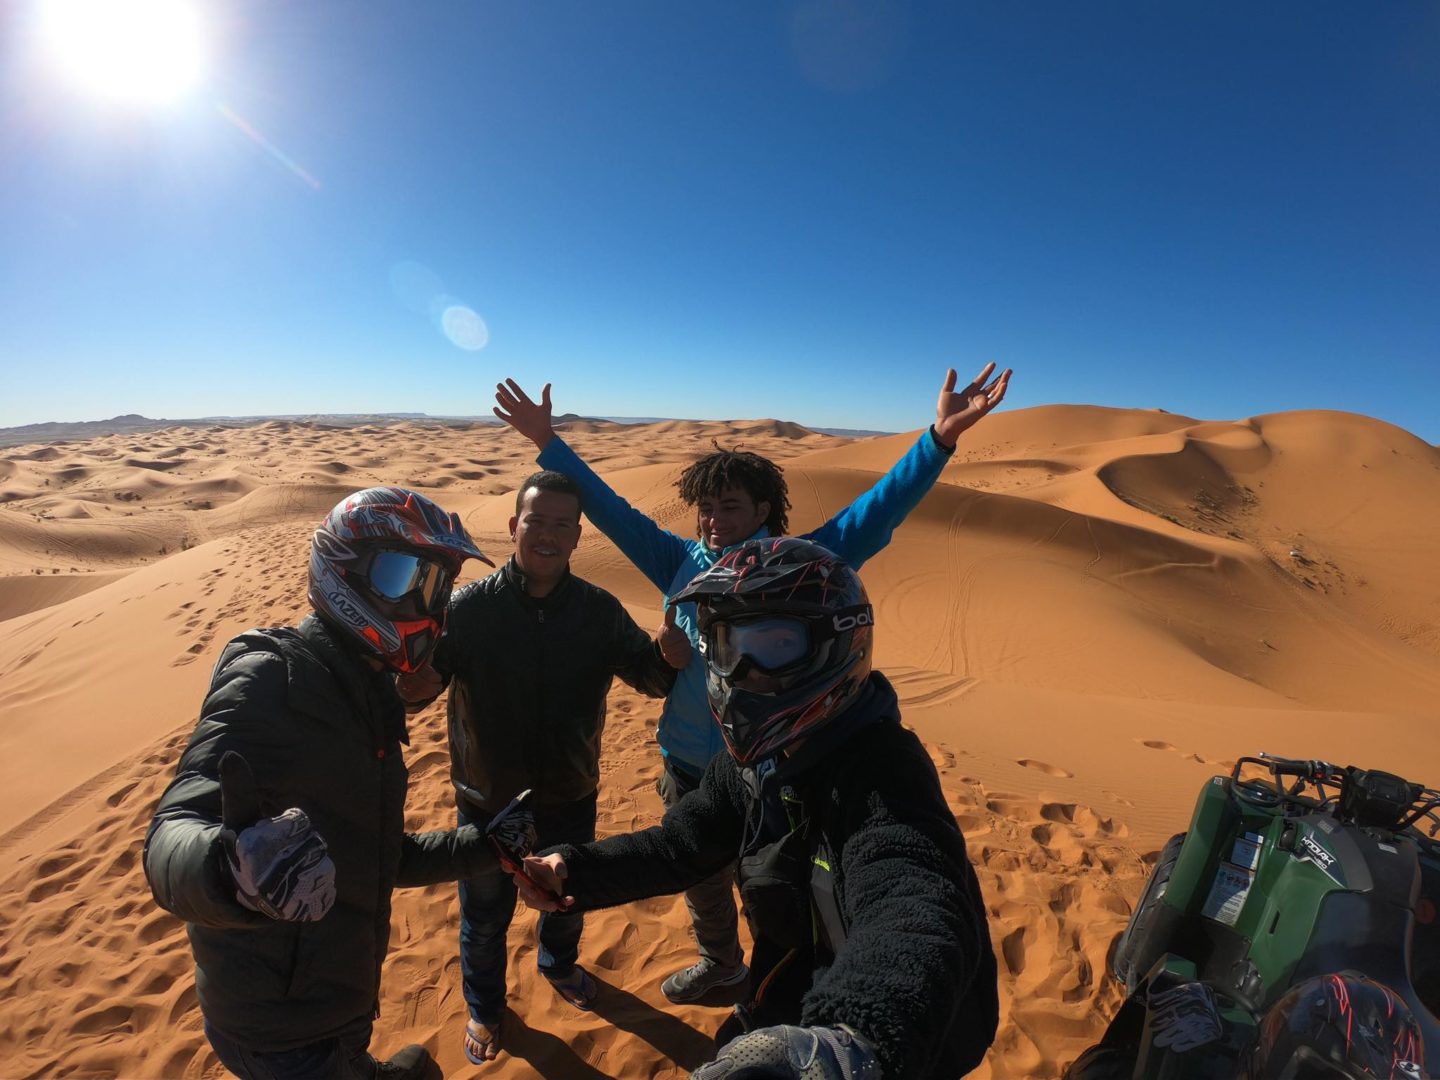 モロッコ砂漠ツアーでバギー体験